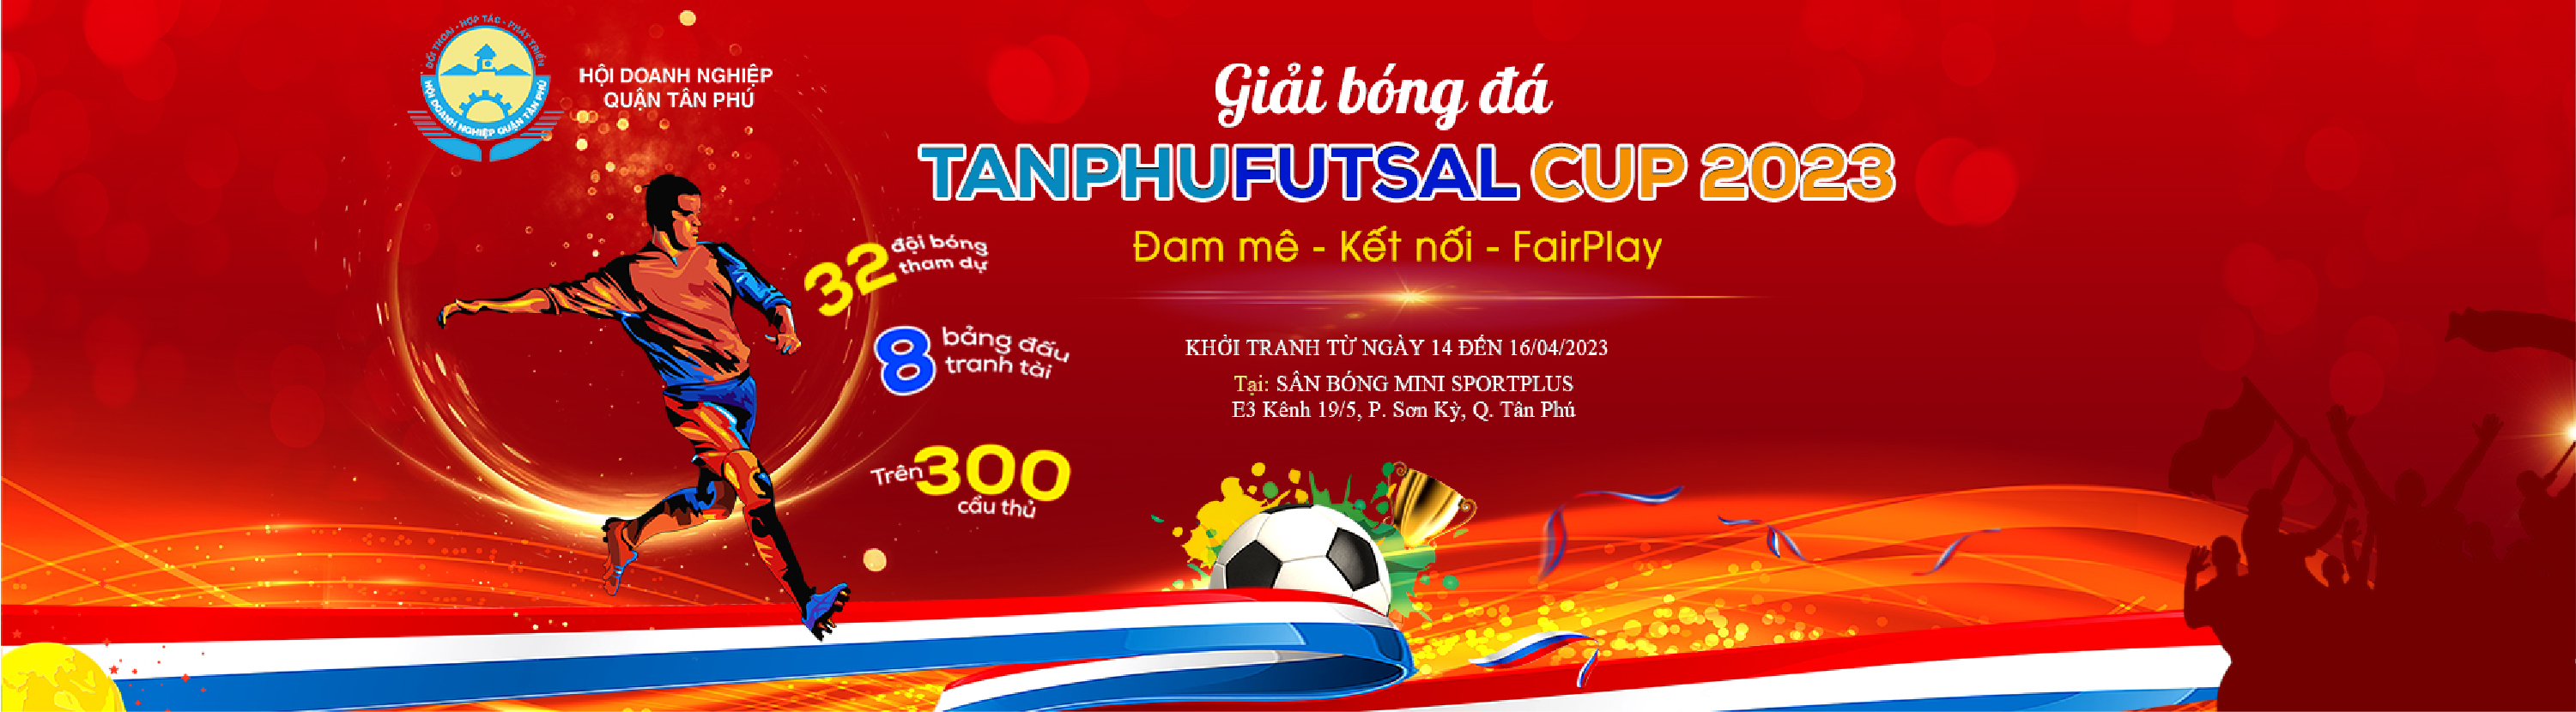 TAN PHU FUTSAL CUP 2023